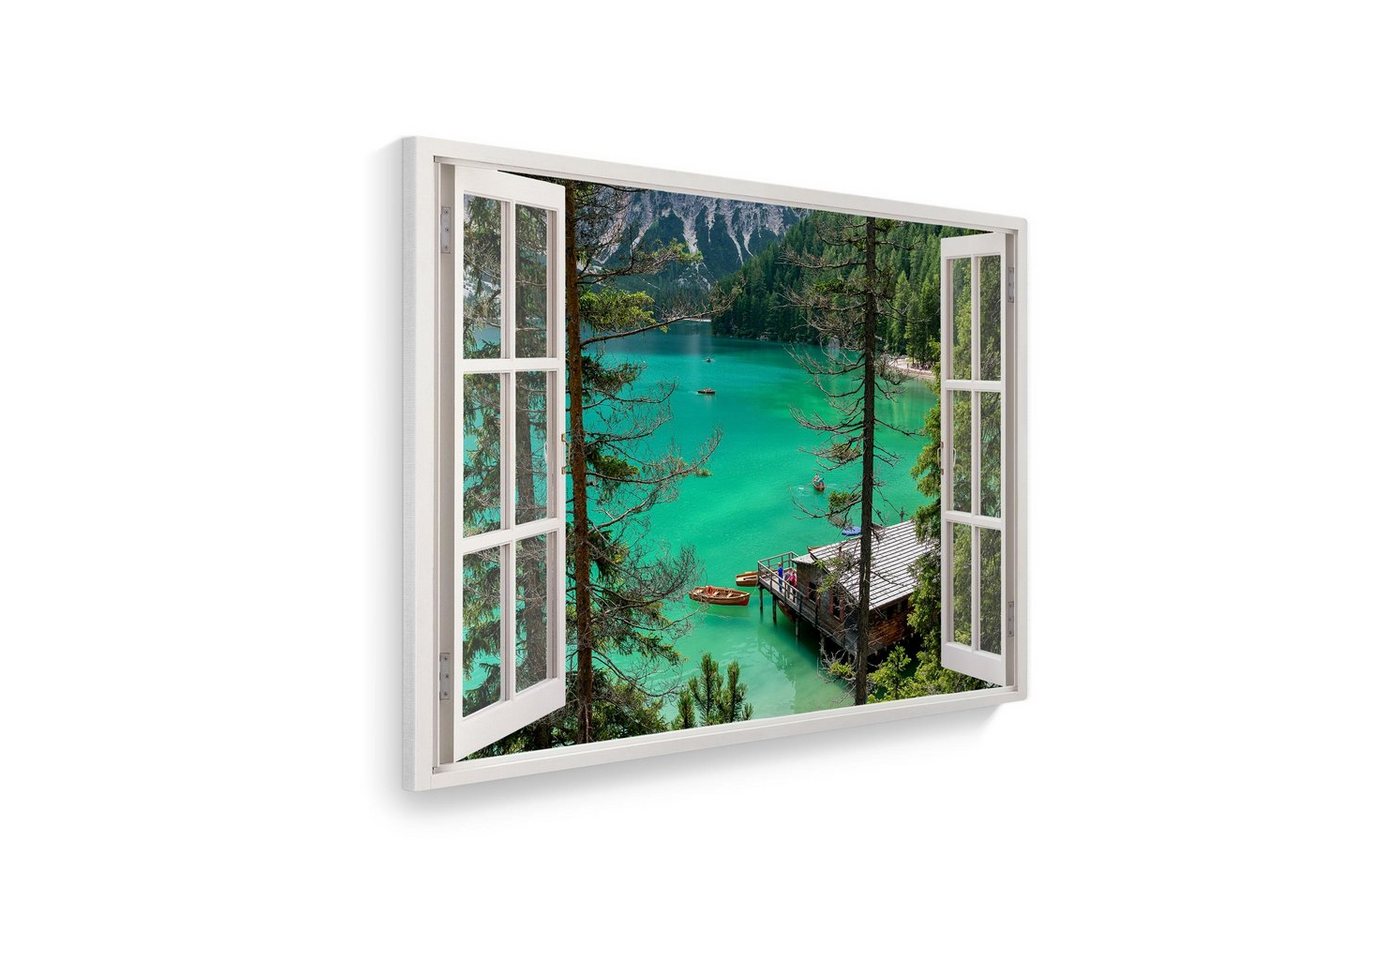 WallSpirit Leinwandbild Fenster mit Aussicht", Bergsee, Leinwandbild geeignet für alle Wohnbereiche" von WallSpirit